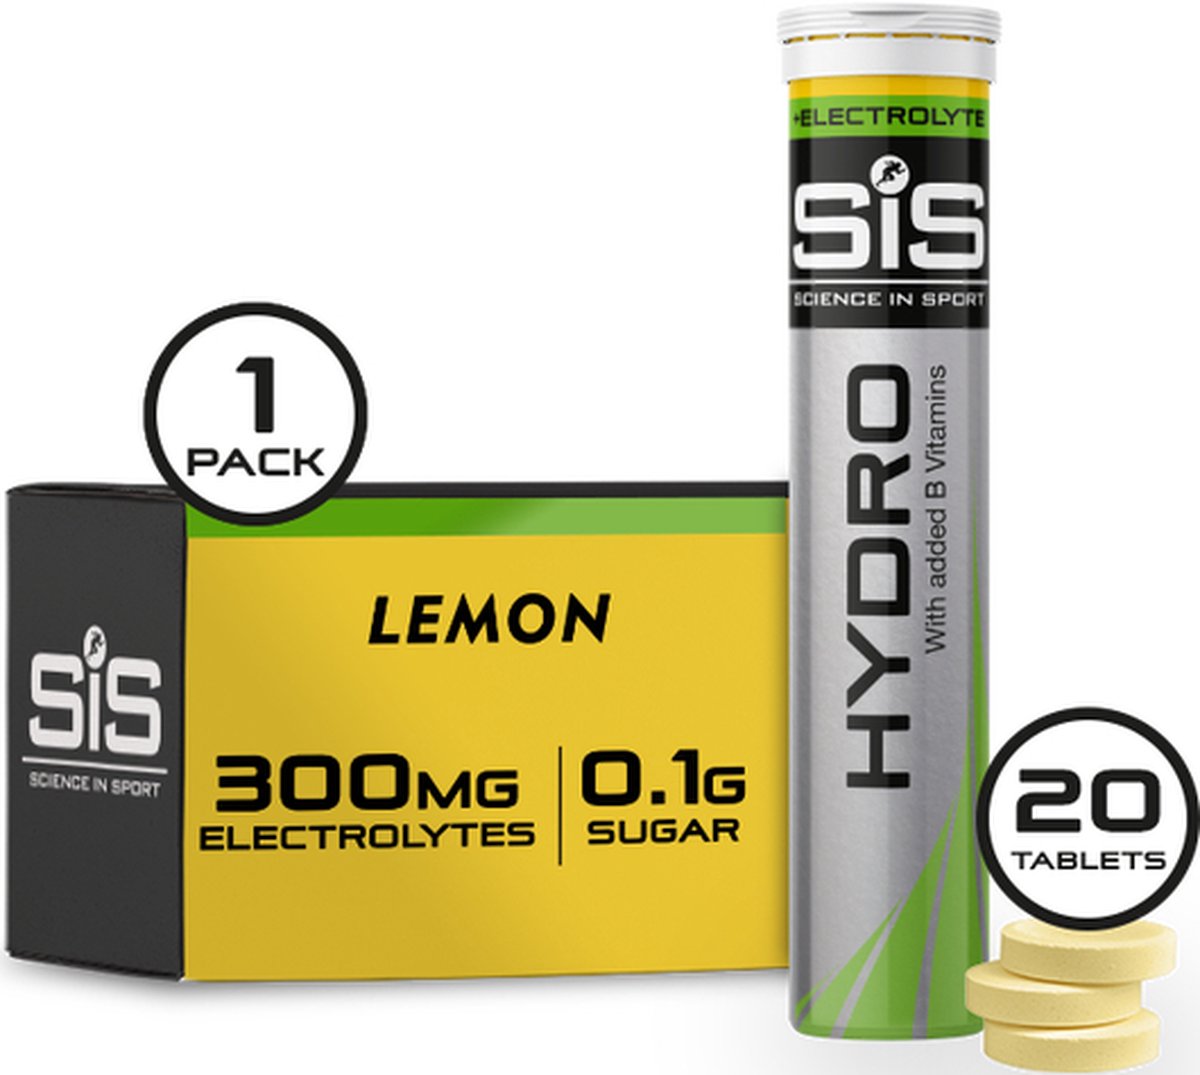 Science in Sport - SIS Go Hydro Bruistabletten - 300mg Elektrolyten - Lemon Smaak - 20 Tabletten - SIS